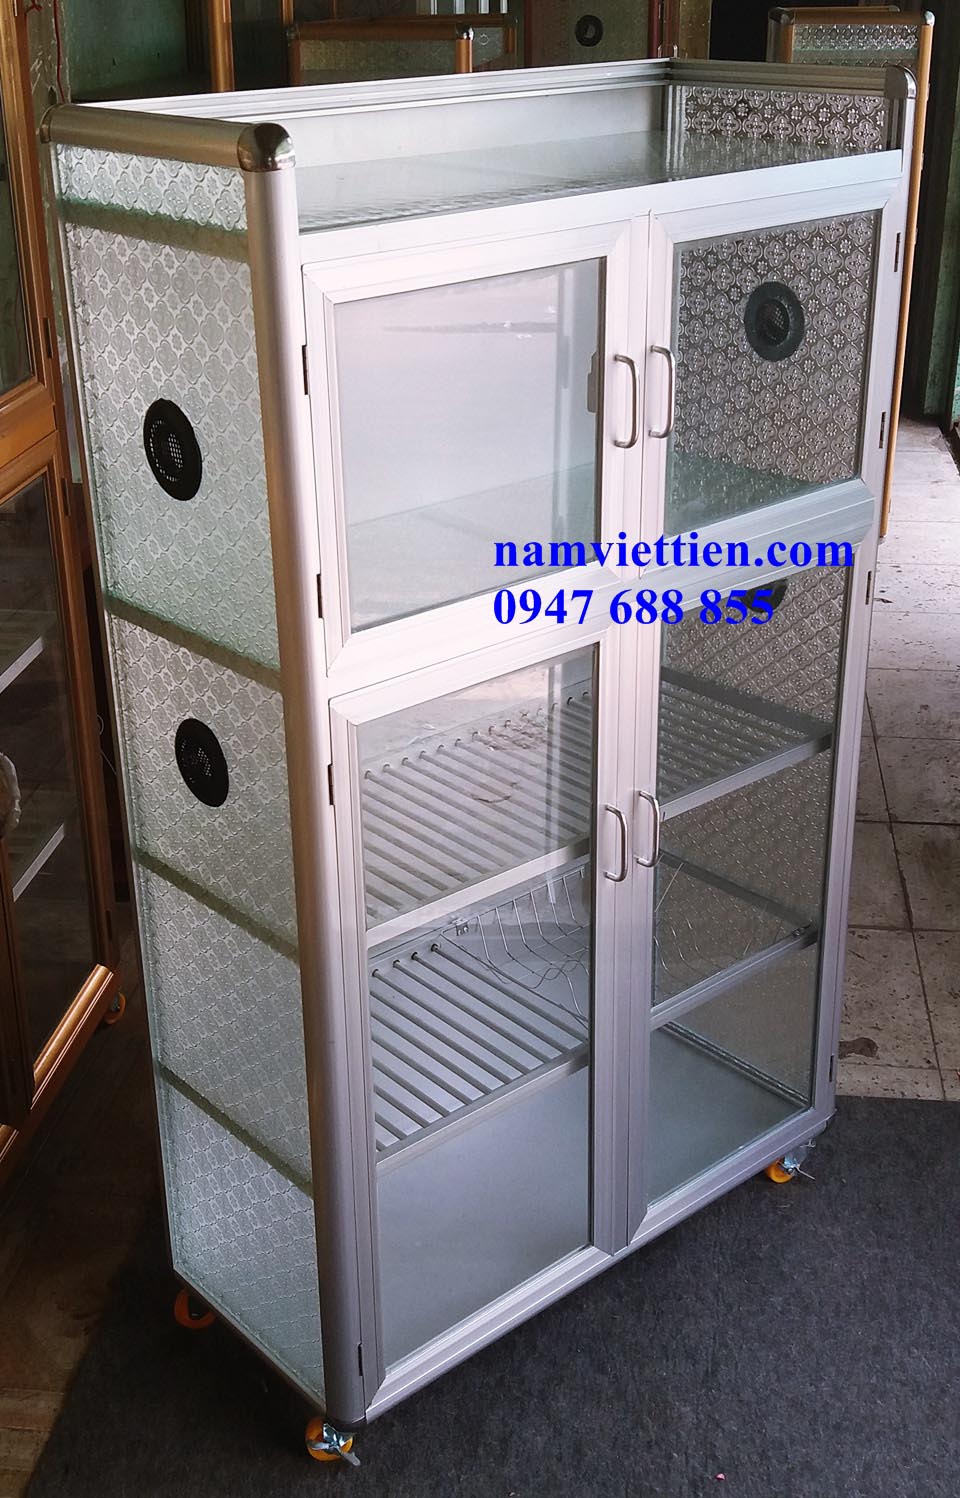 20180323 123001 - Mẫu tủ đựng chén cao cấp giá rẻ